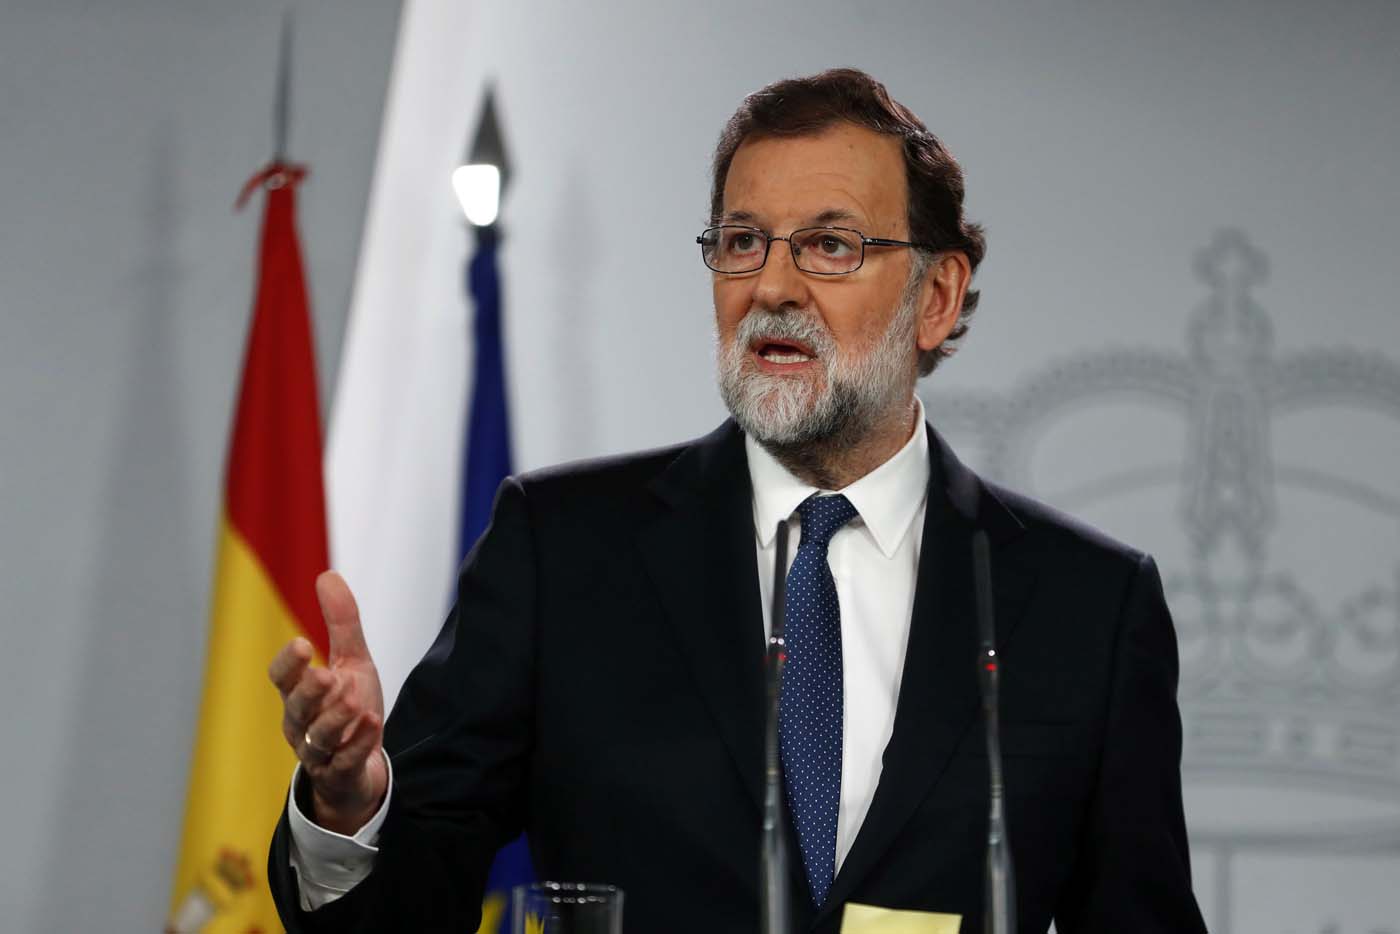 Rajoy reitera que hará cumplir la ley ante el discurso del candidato catalán